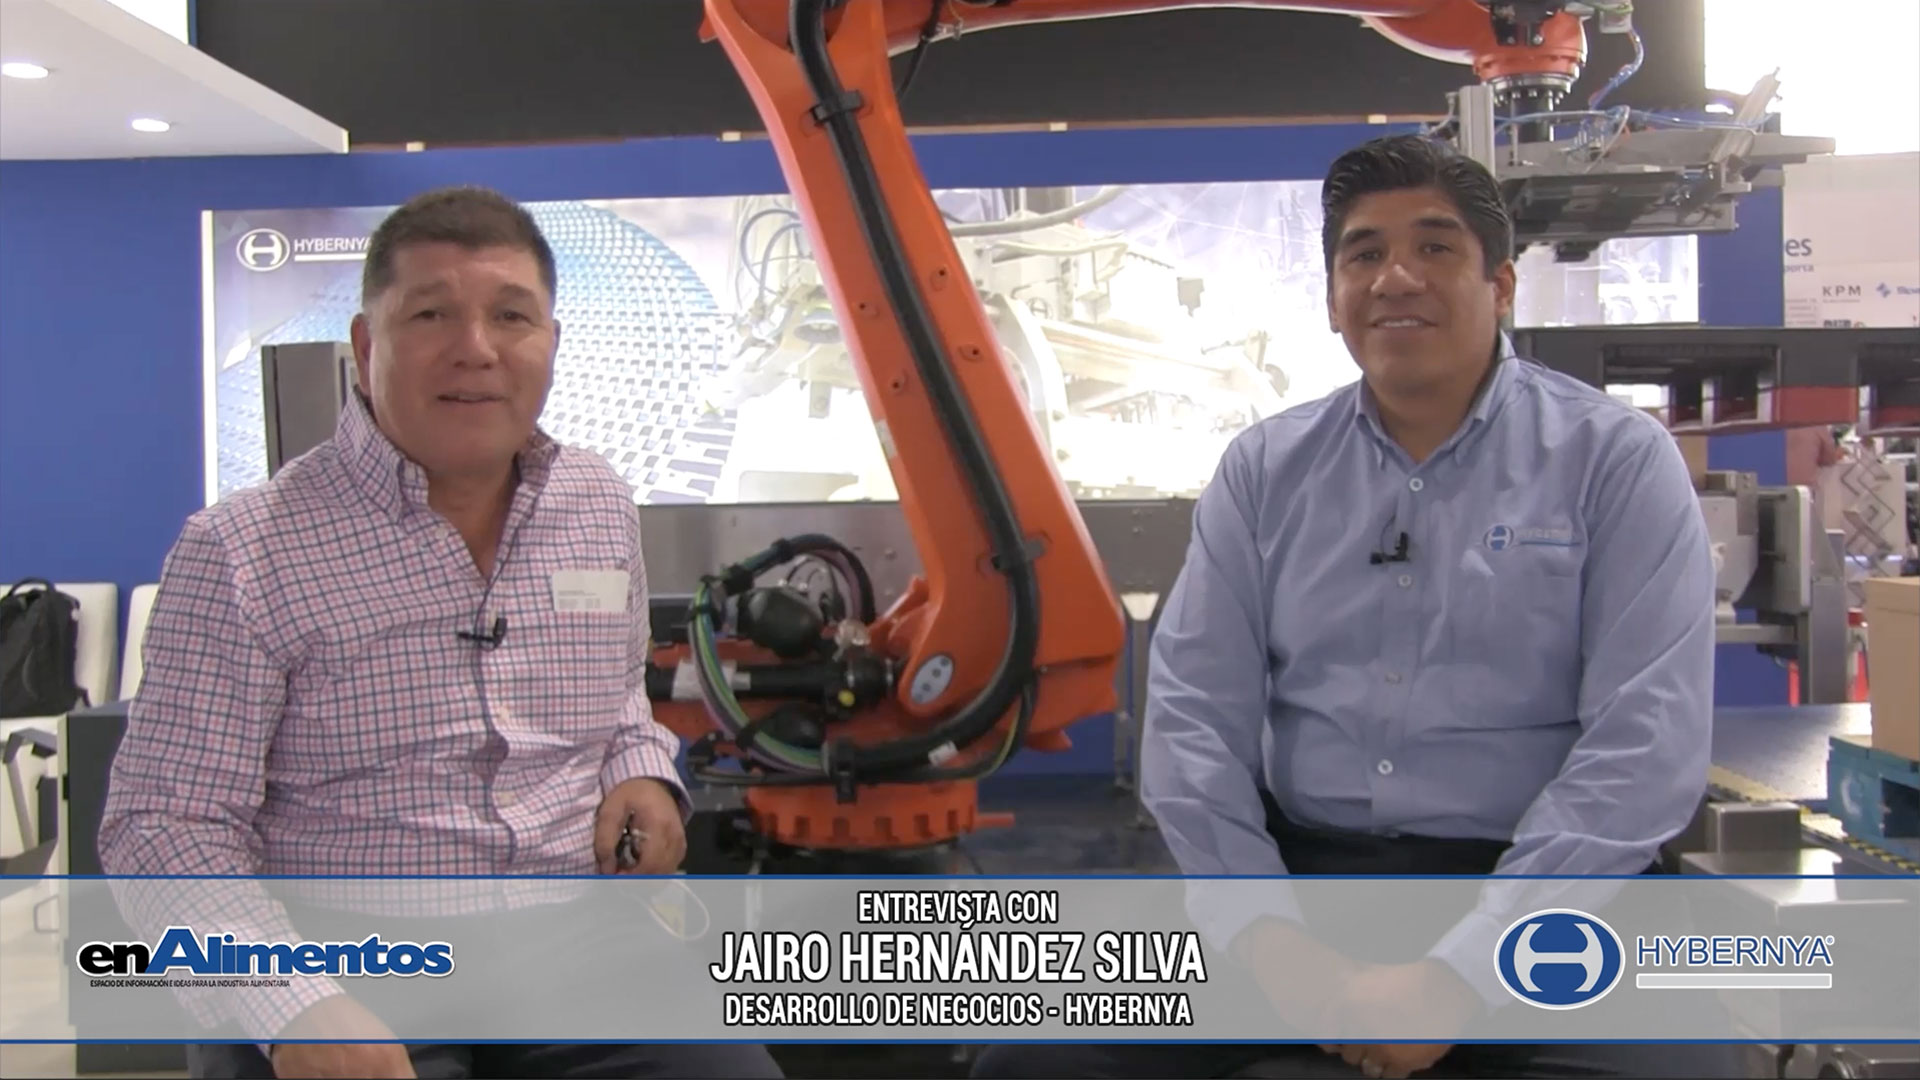 Entrevista a Jairo Hernández y José Rangel - Hybernya